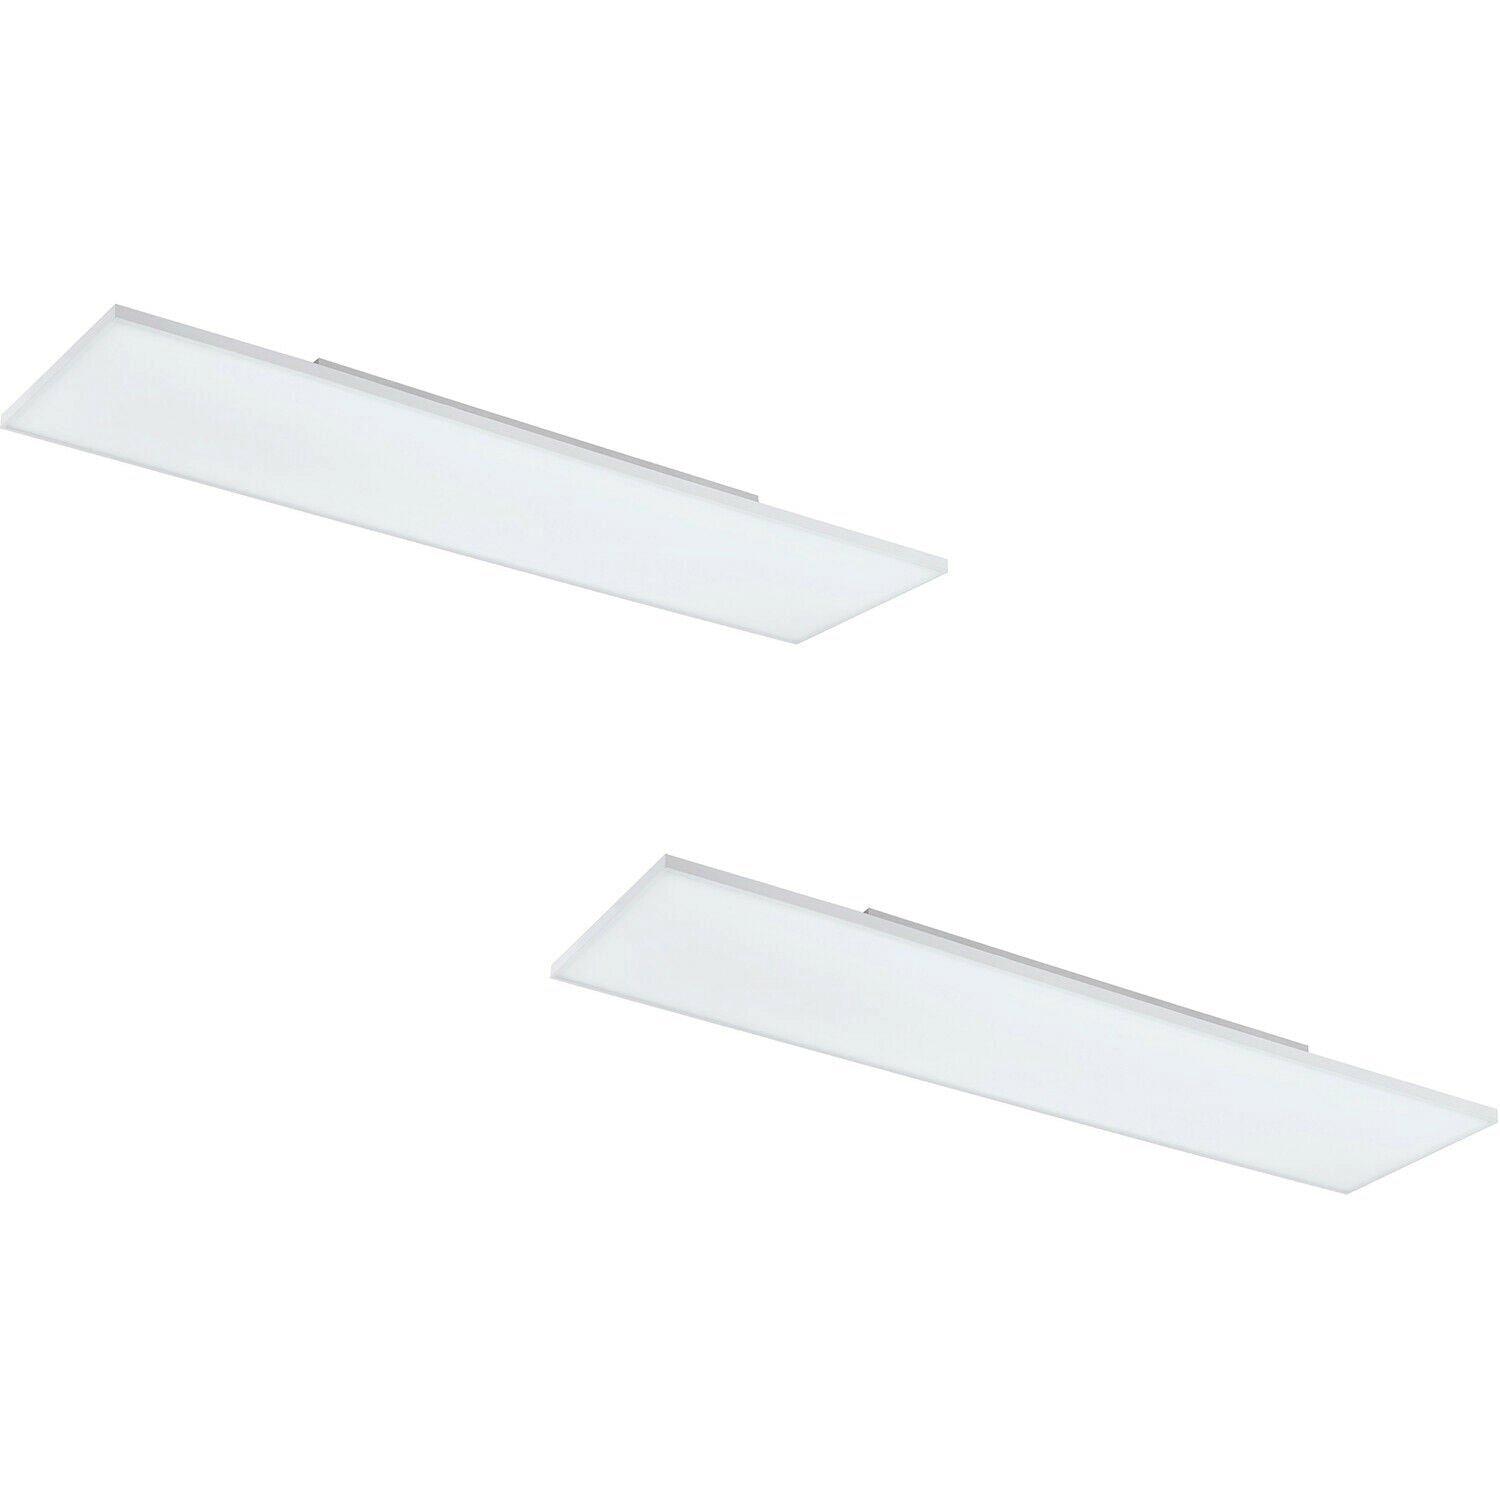 2 PACK Wall / Ceiling Light White 1200mm Slim Strip Panel 33W LED 4000K